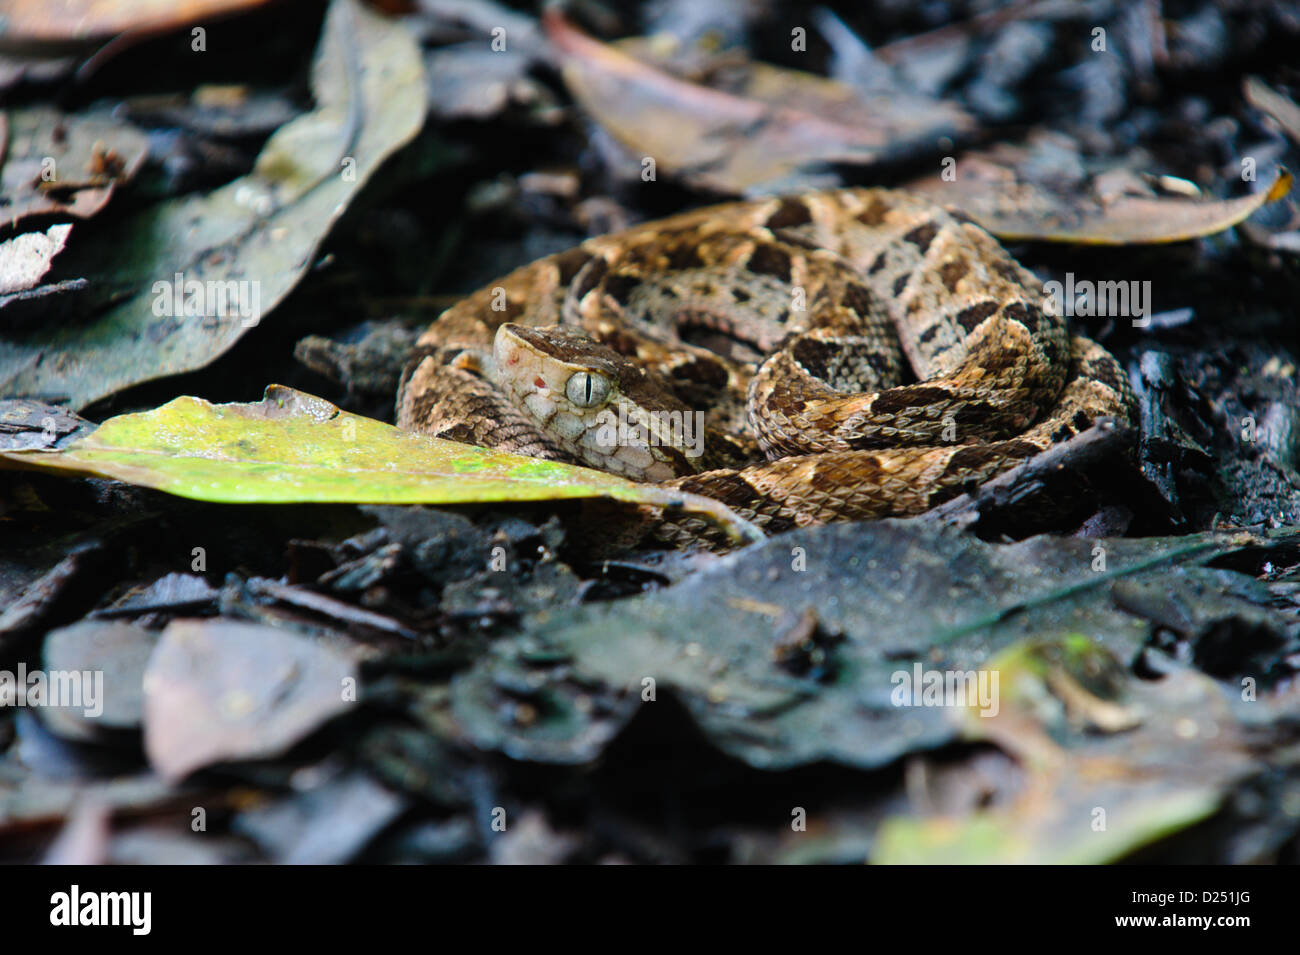 La spirale fer-de-lance (Bothrops asper), Pit Viper, serpent parmi les feuilles mortes. Costa Rica Banque D'Images